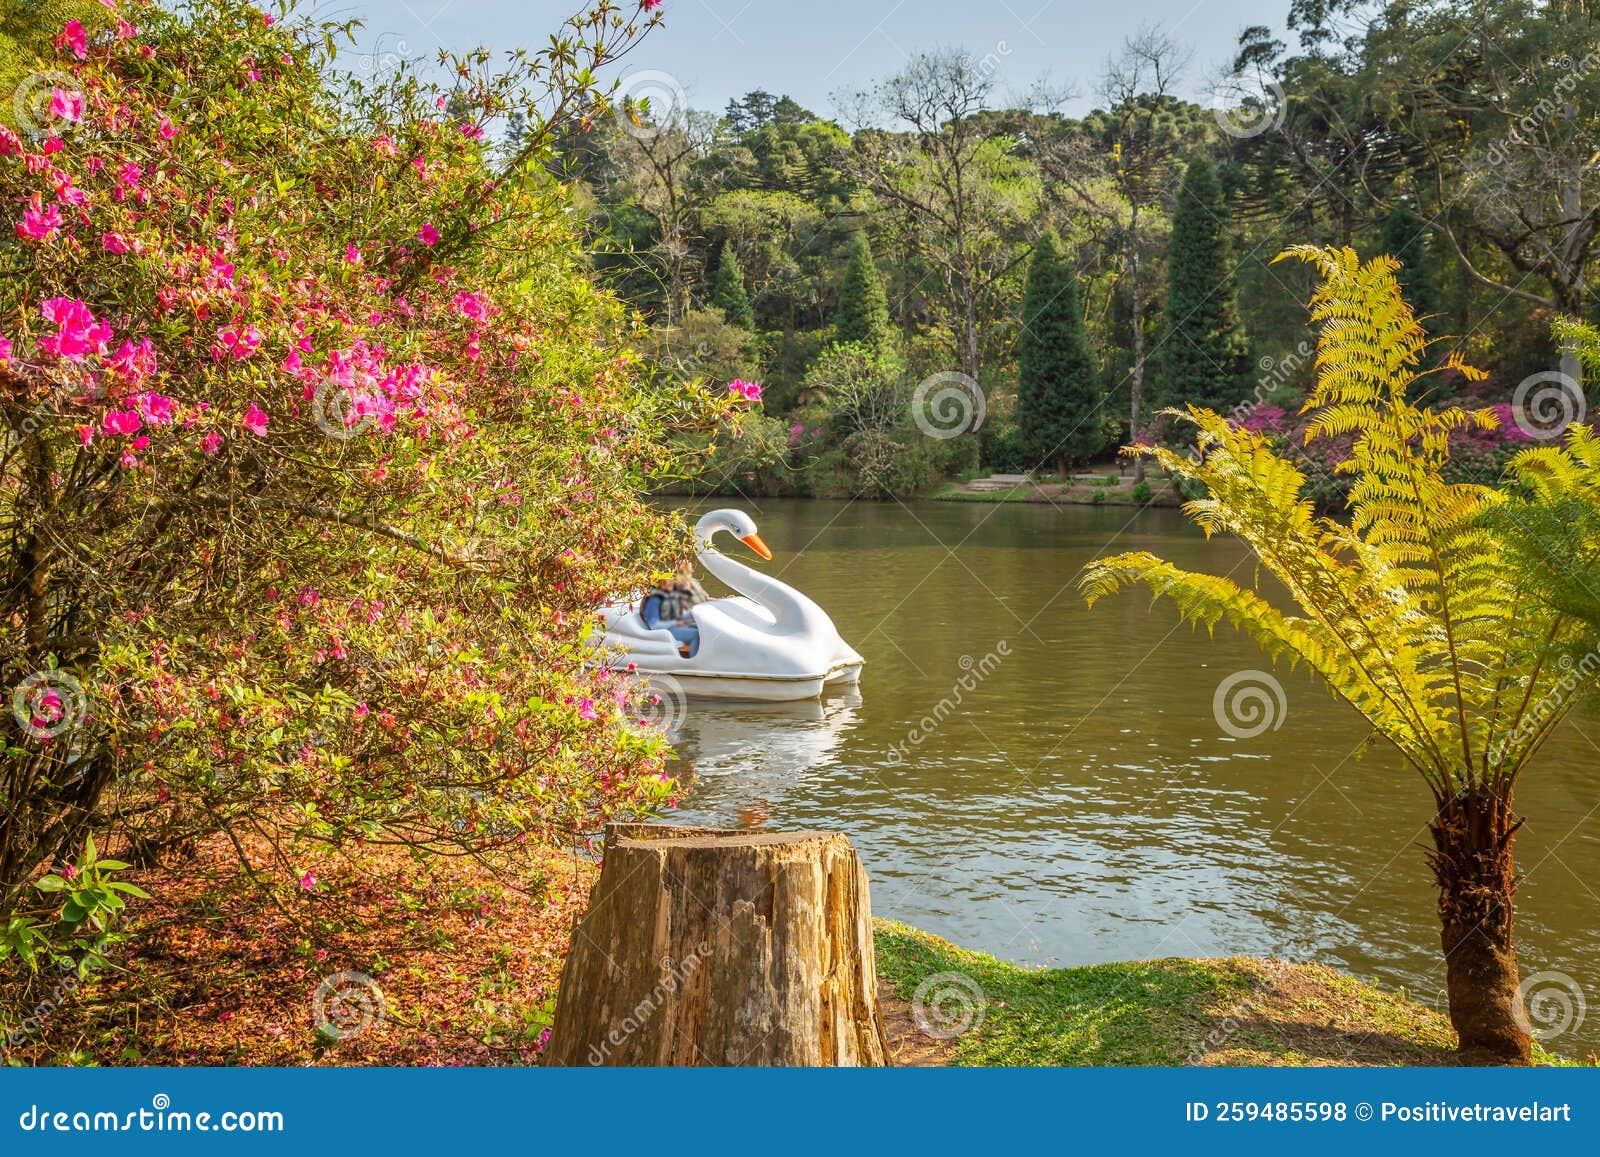 lago negro black lake with swan pedal boat , gramado, rio grande do sul, brazil